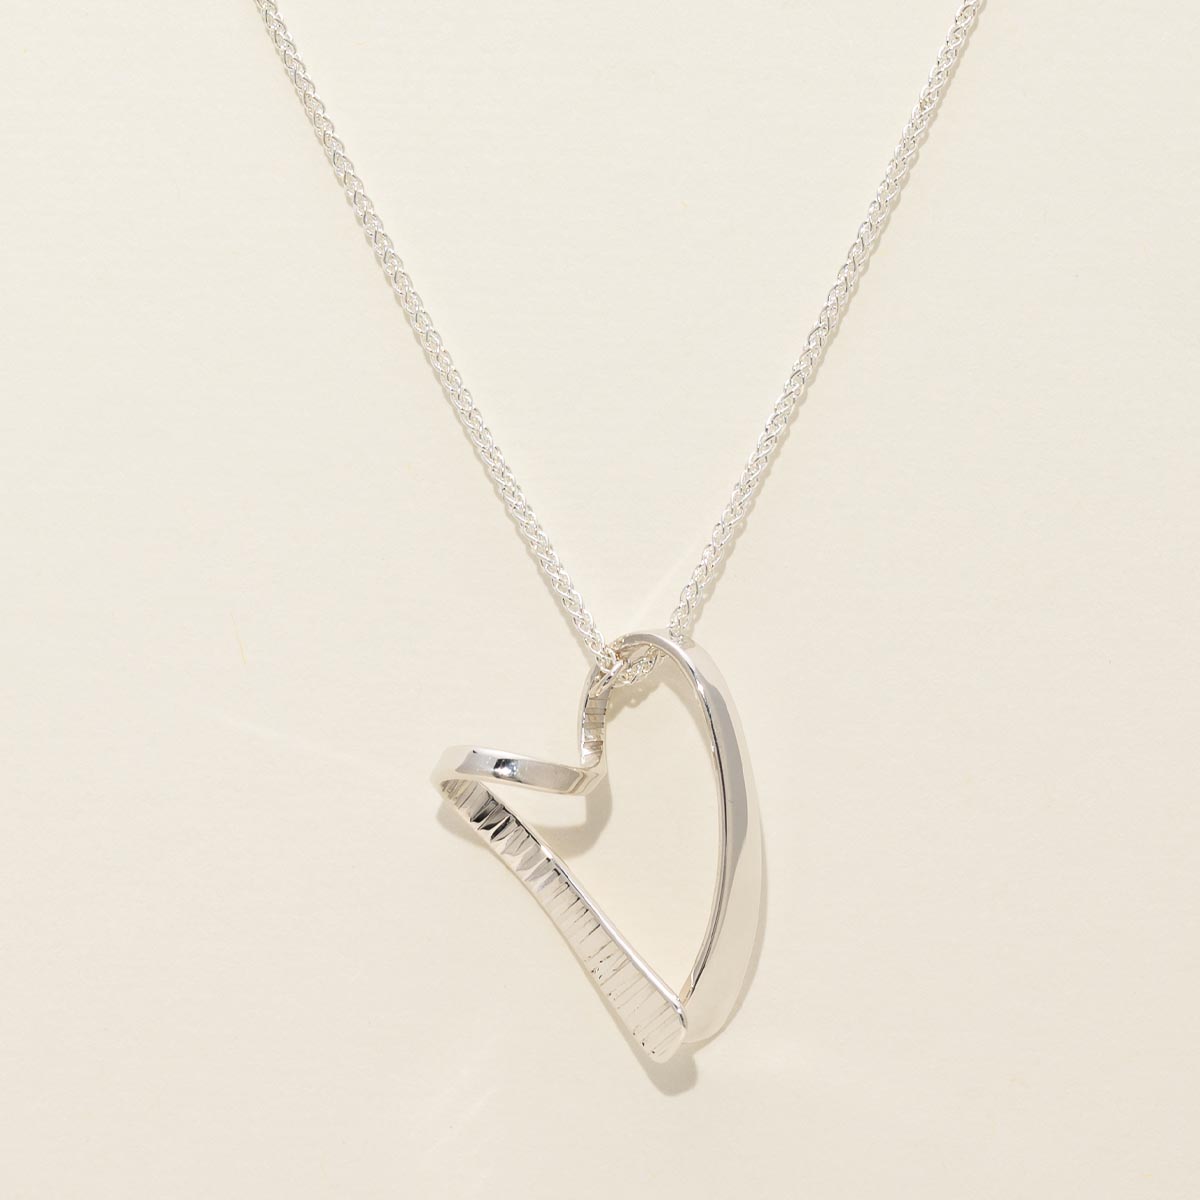 E.L. Designs Cherish Necklace in Sterling Silver